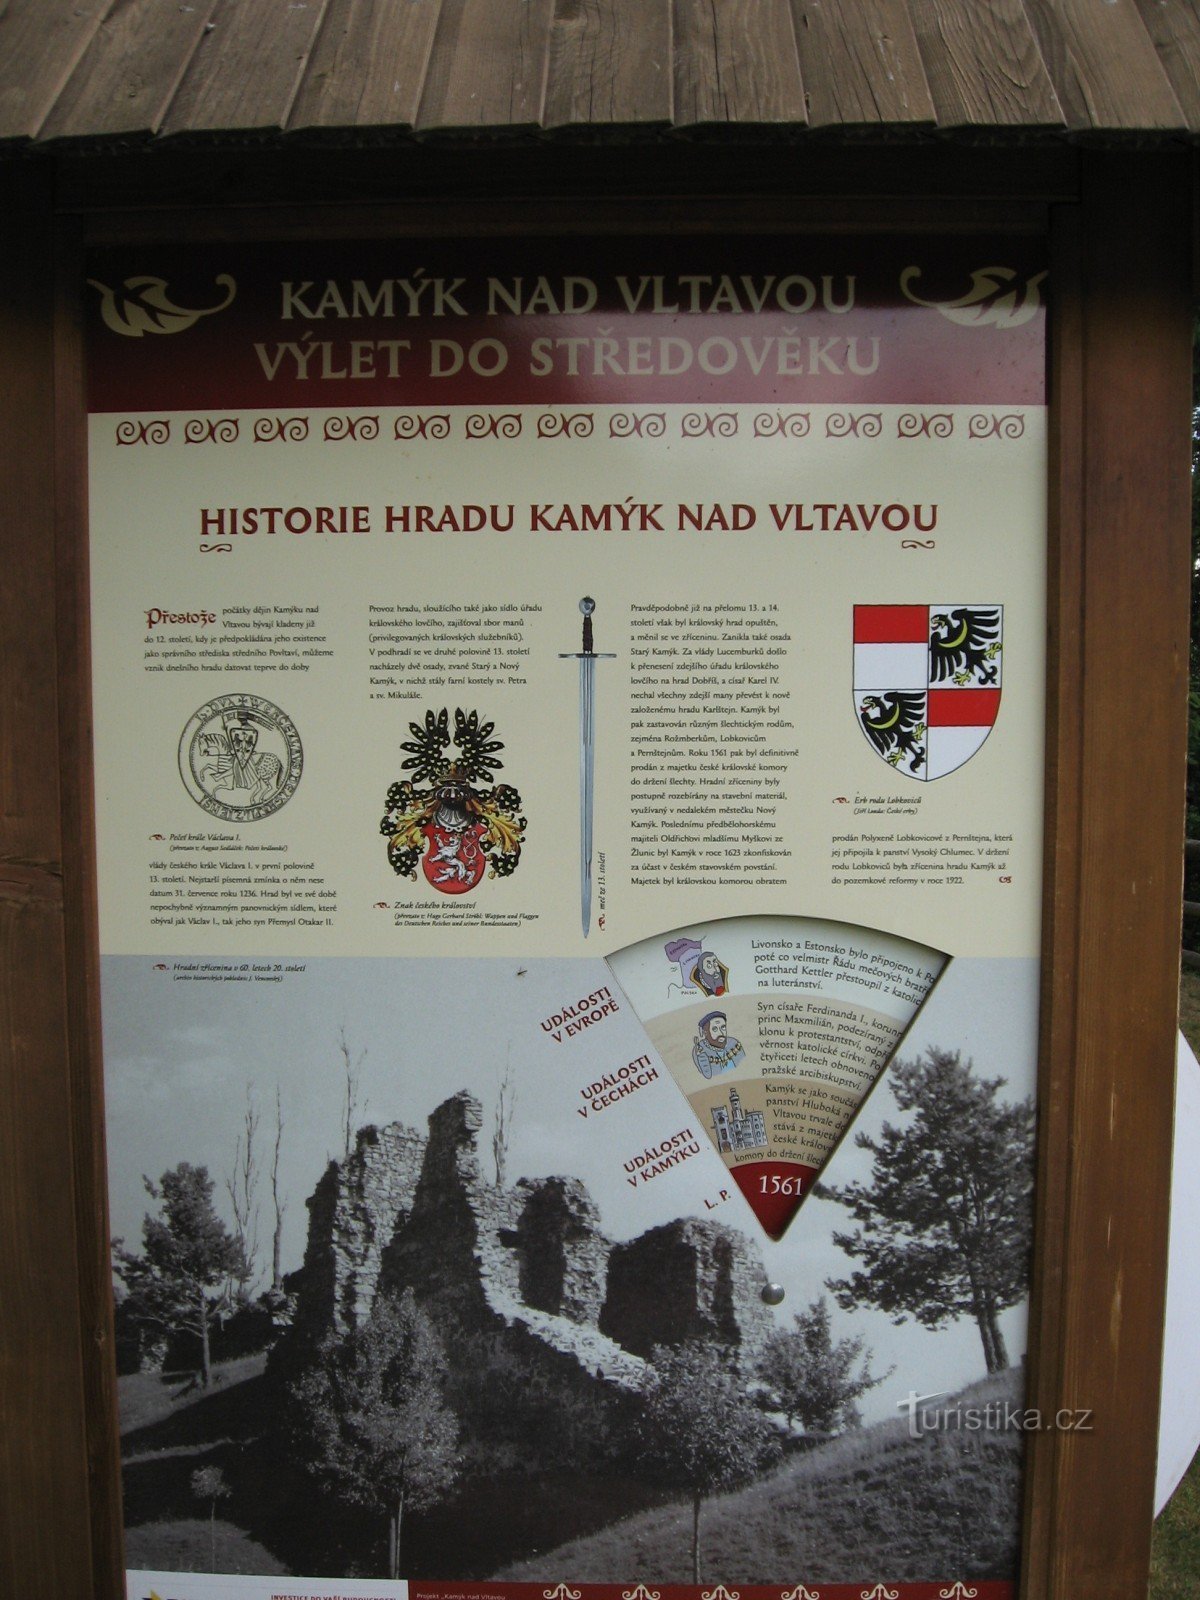 bảng thông tin trong khuôn viên của tàn tích Kamýk nad Vltavou